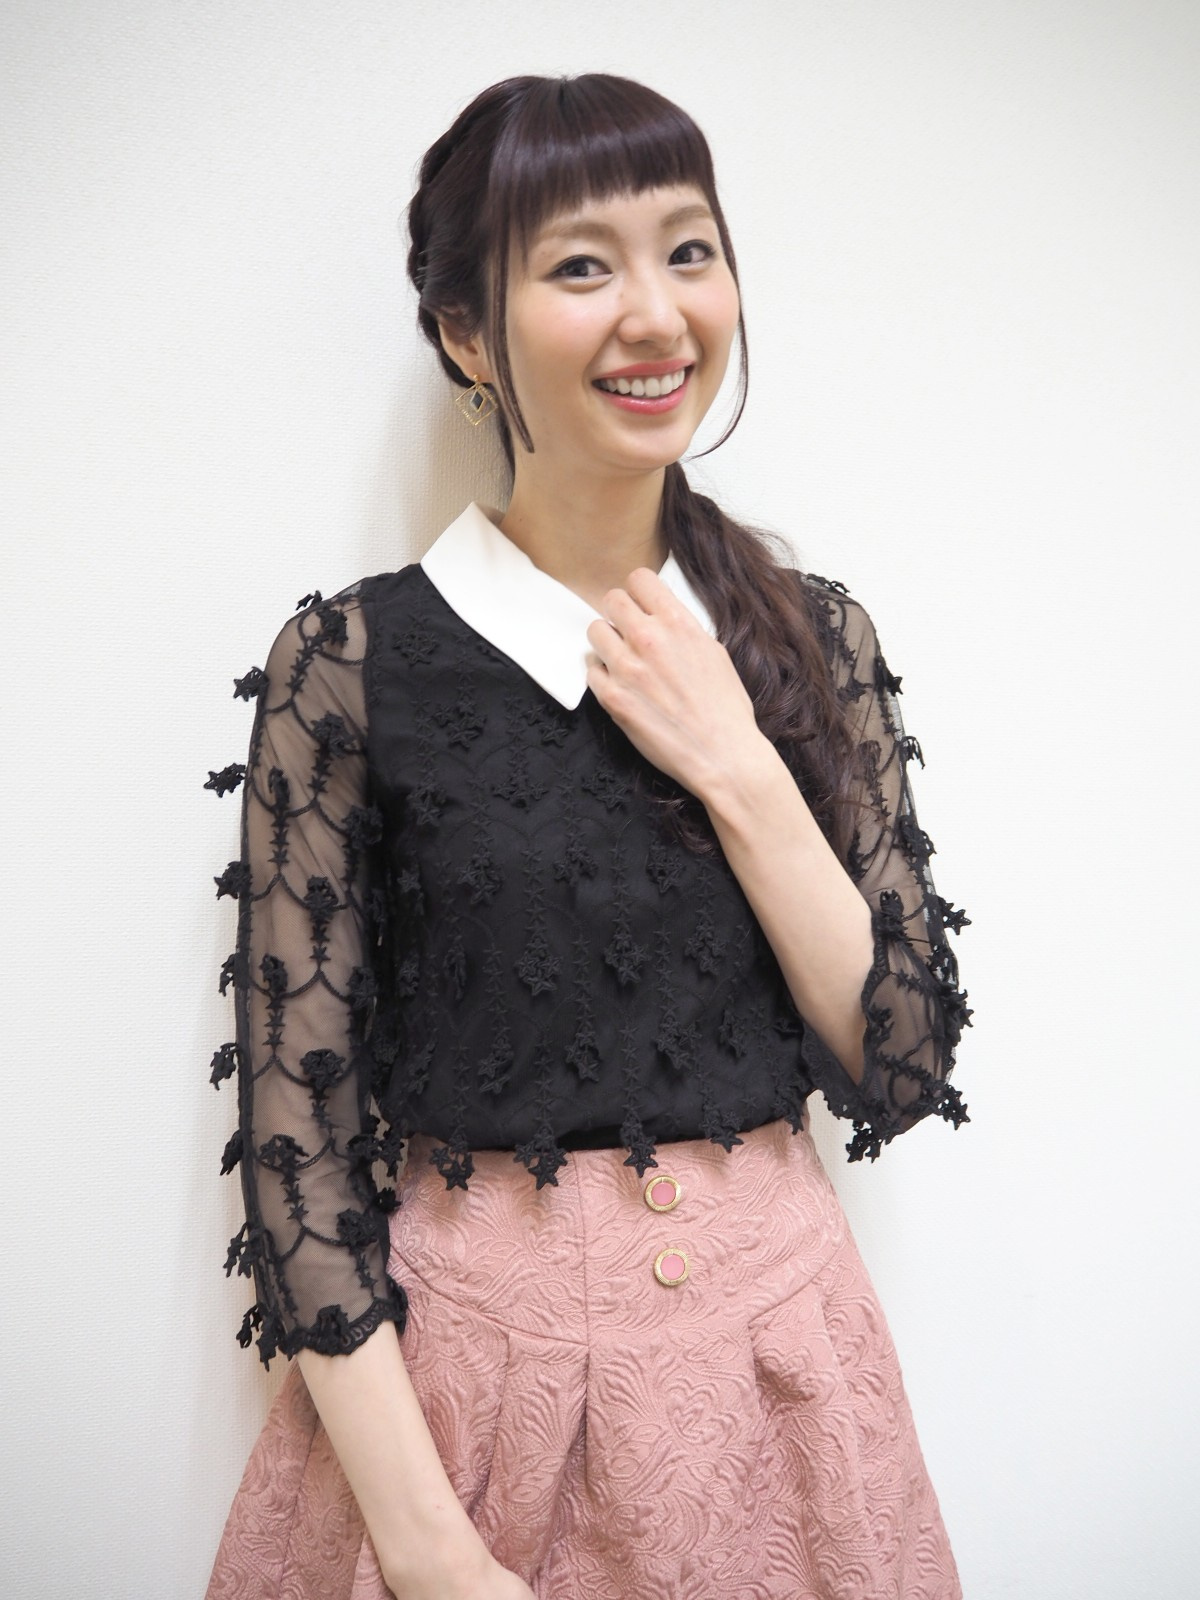 声優の戸松遥 第1子女児出産を報告 命がけとはまさにこの事か Oricon News